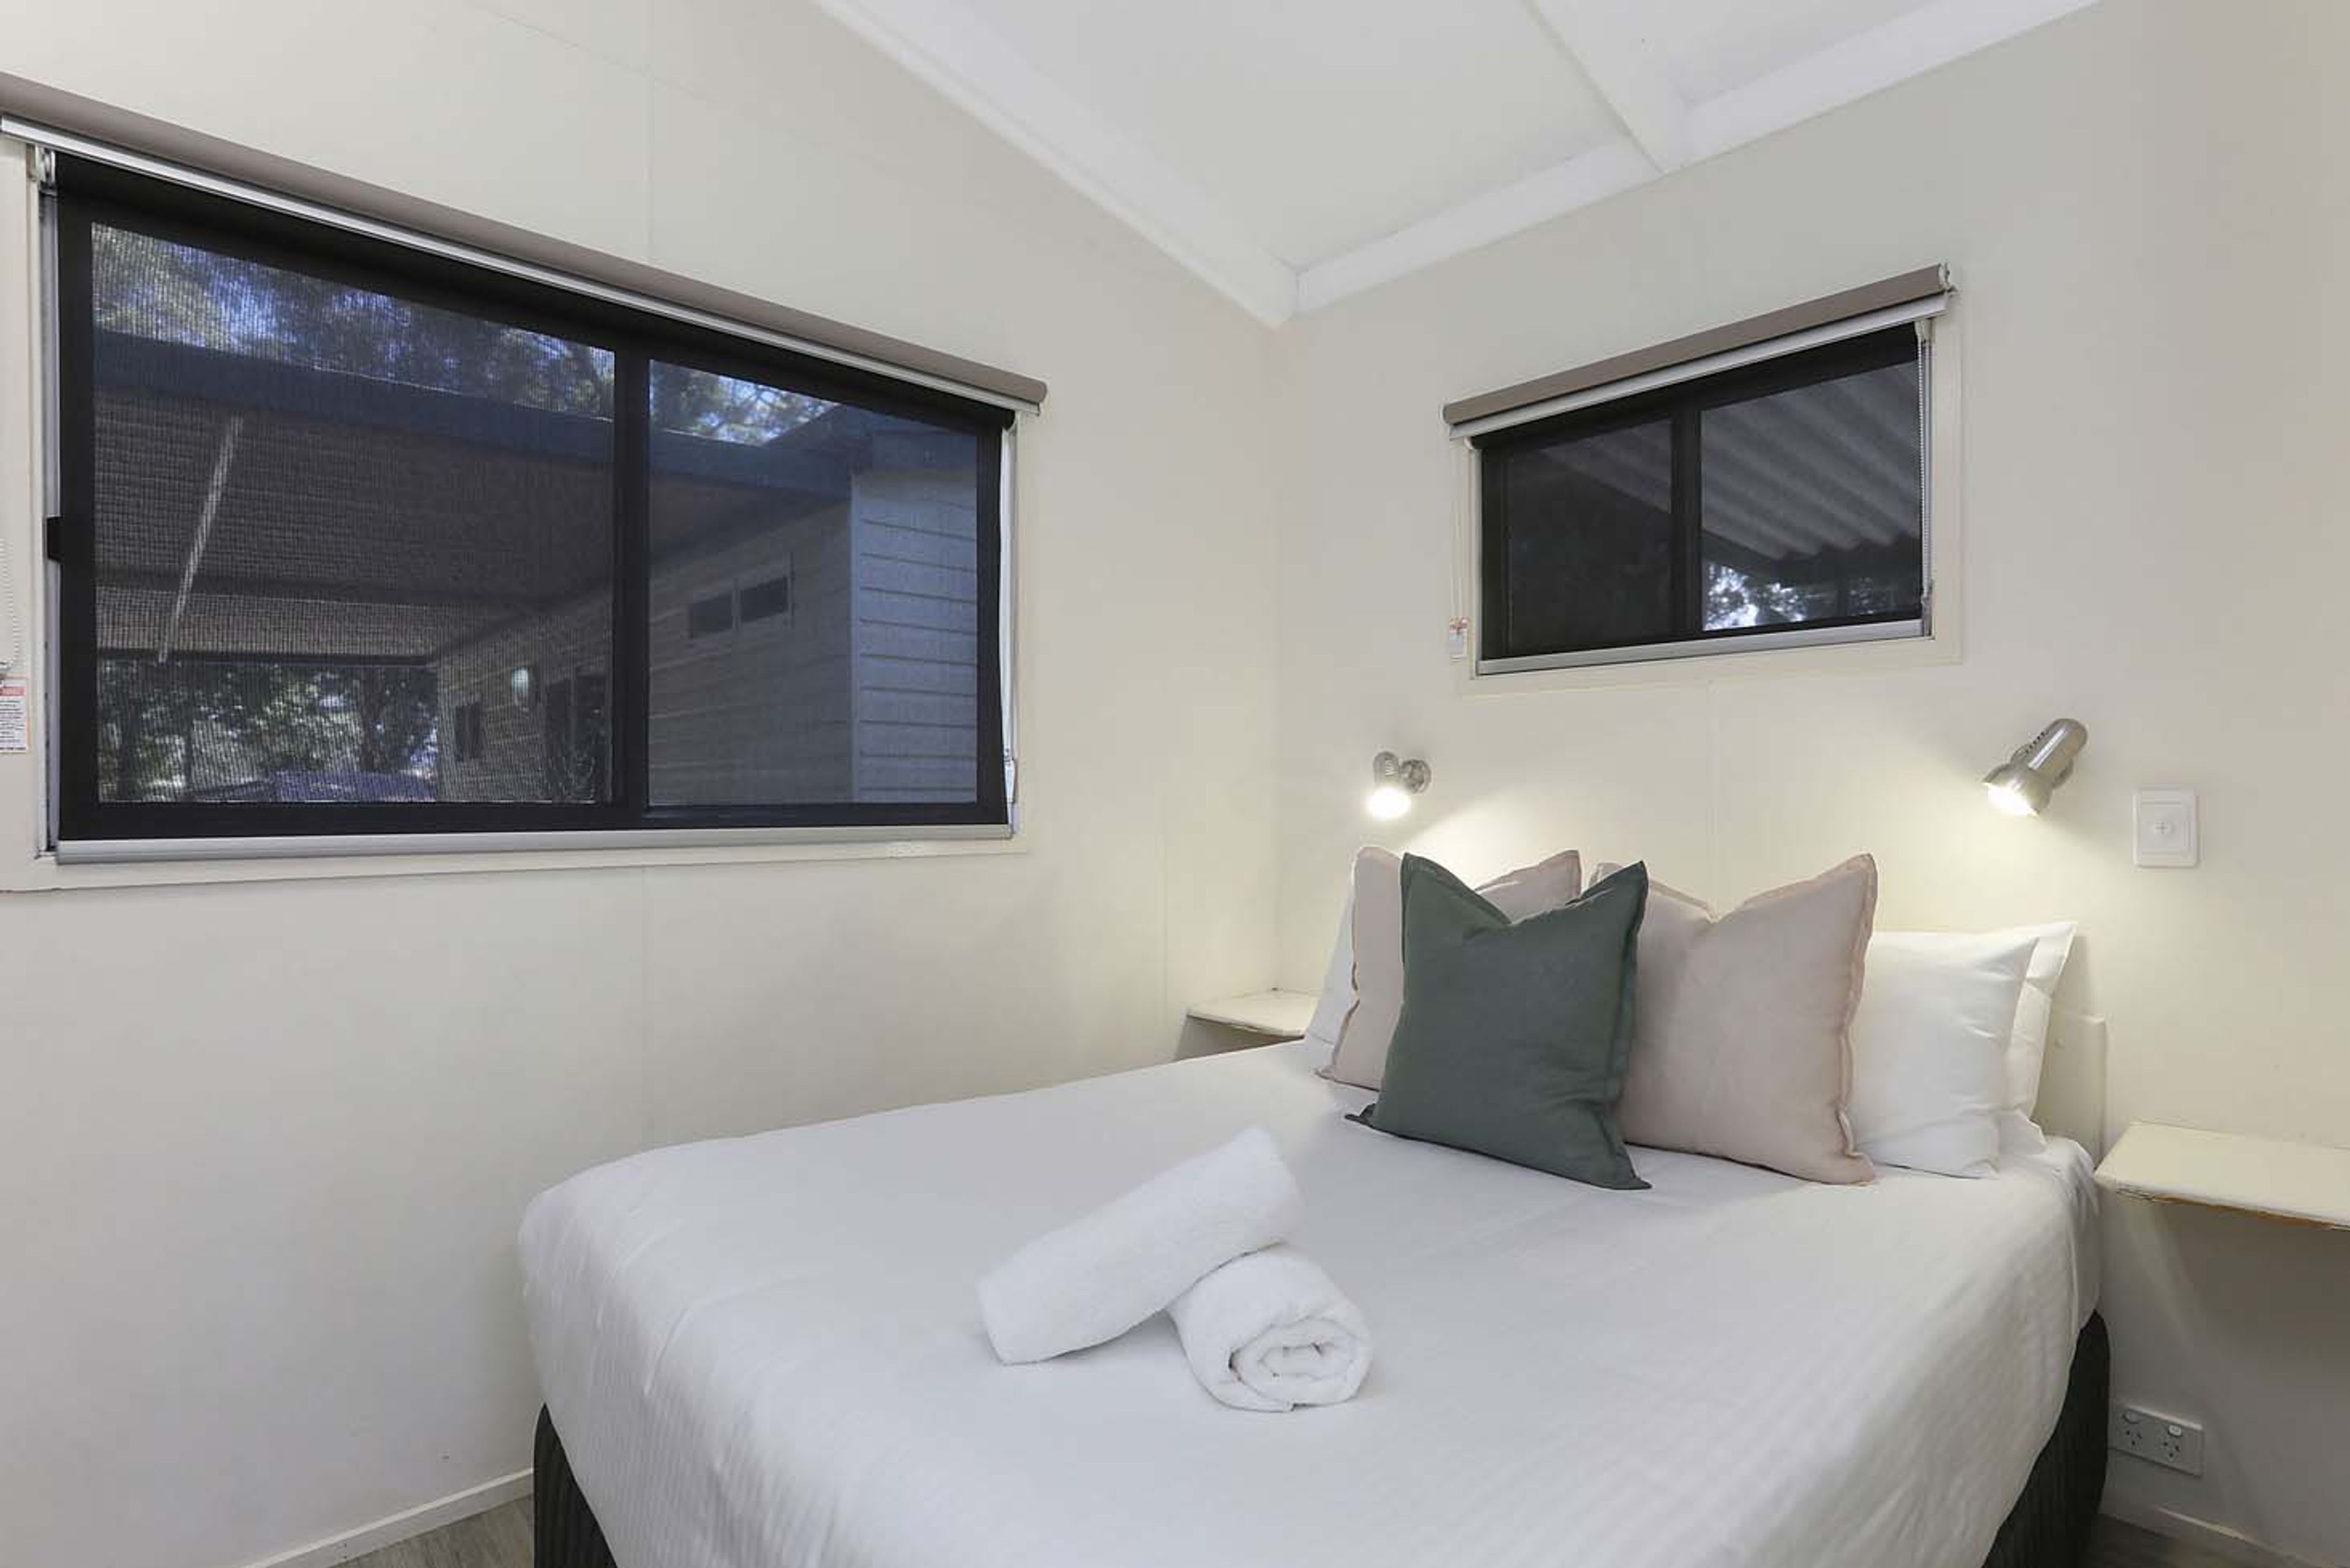 Coffs Harbour - Standard cabin sleeps 4 - bed